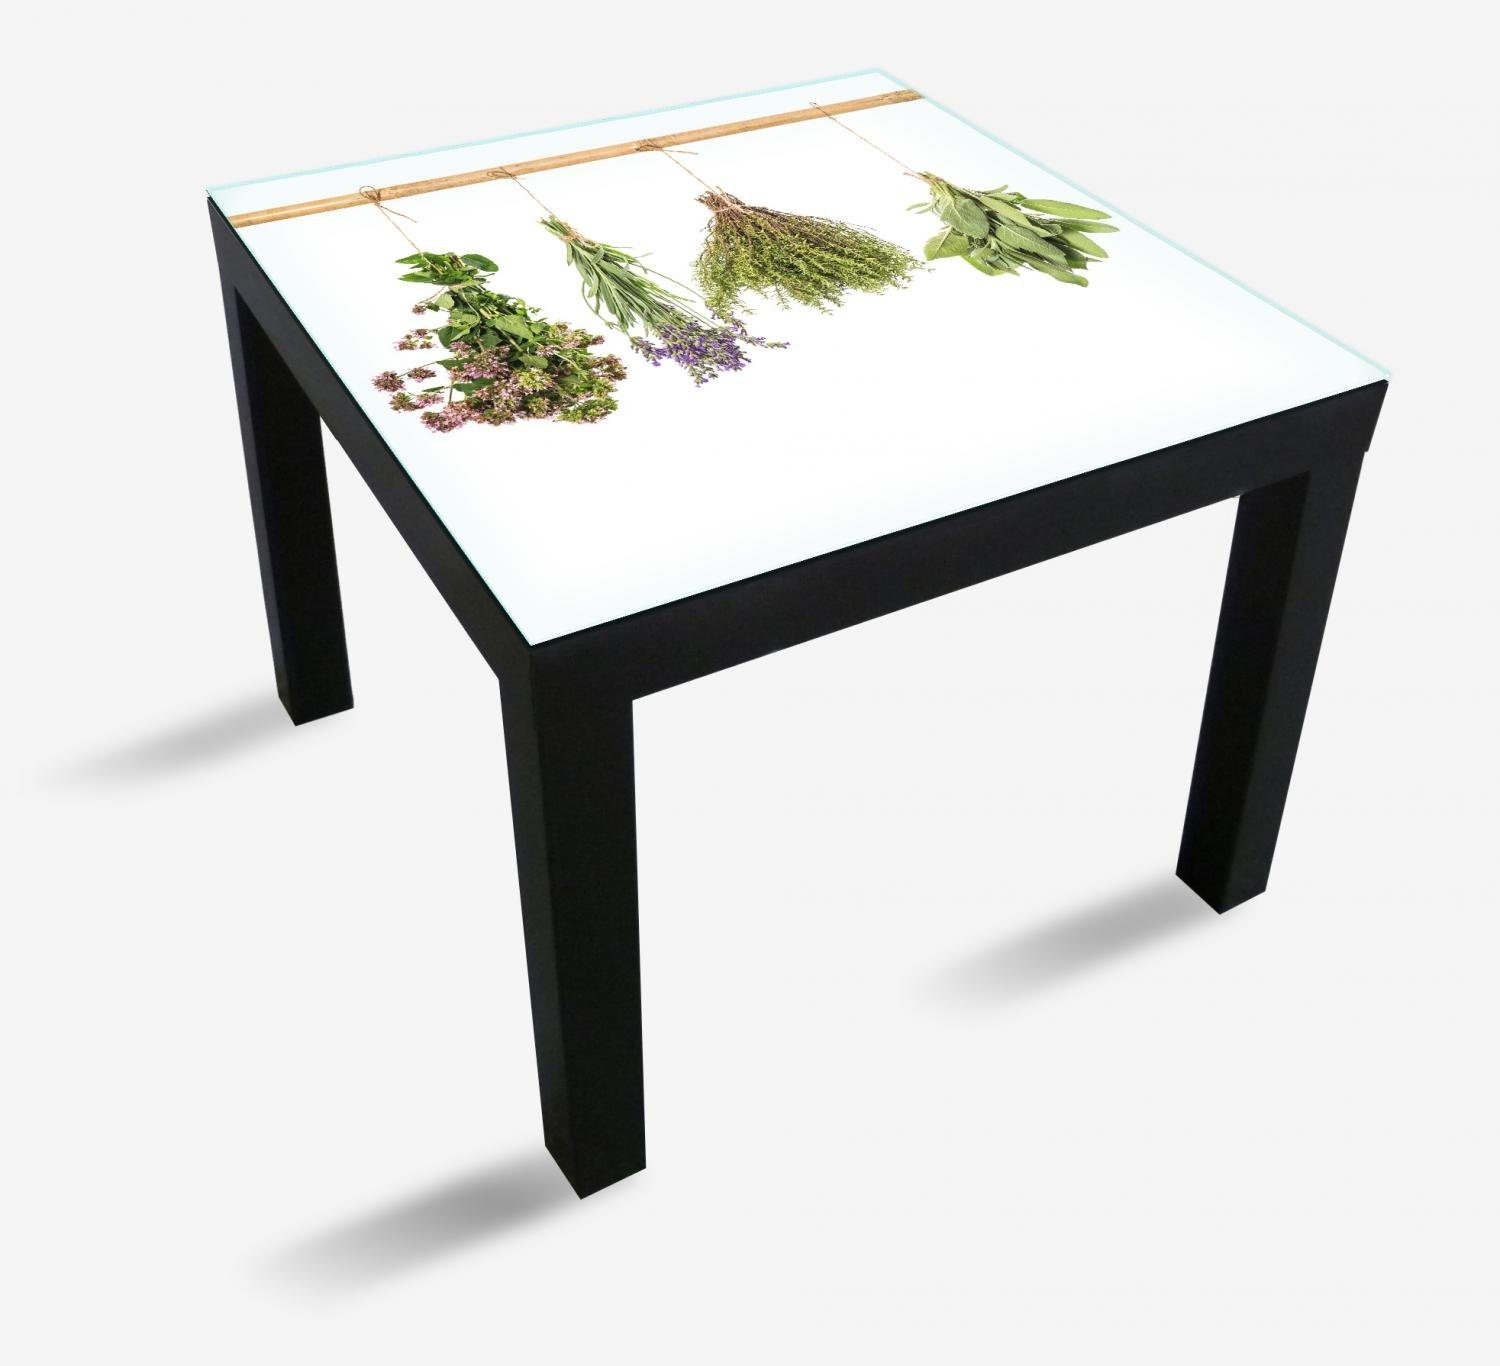 Wallario Tischplatte Verschiedene Kräuter an der Leine (1 St), für Ikea Lack Tisch geeignet